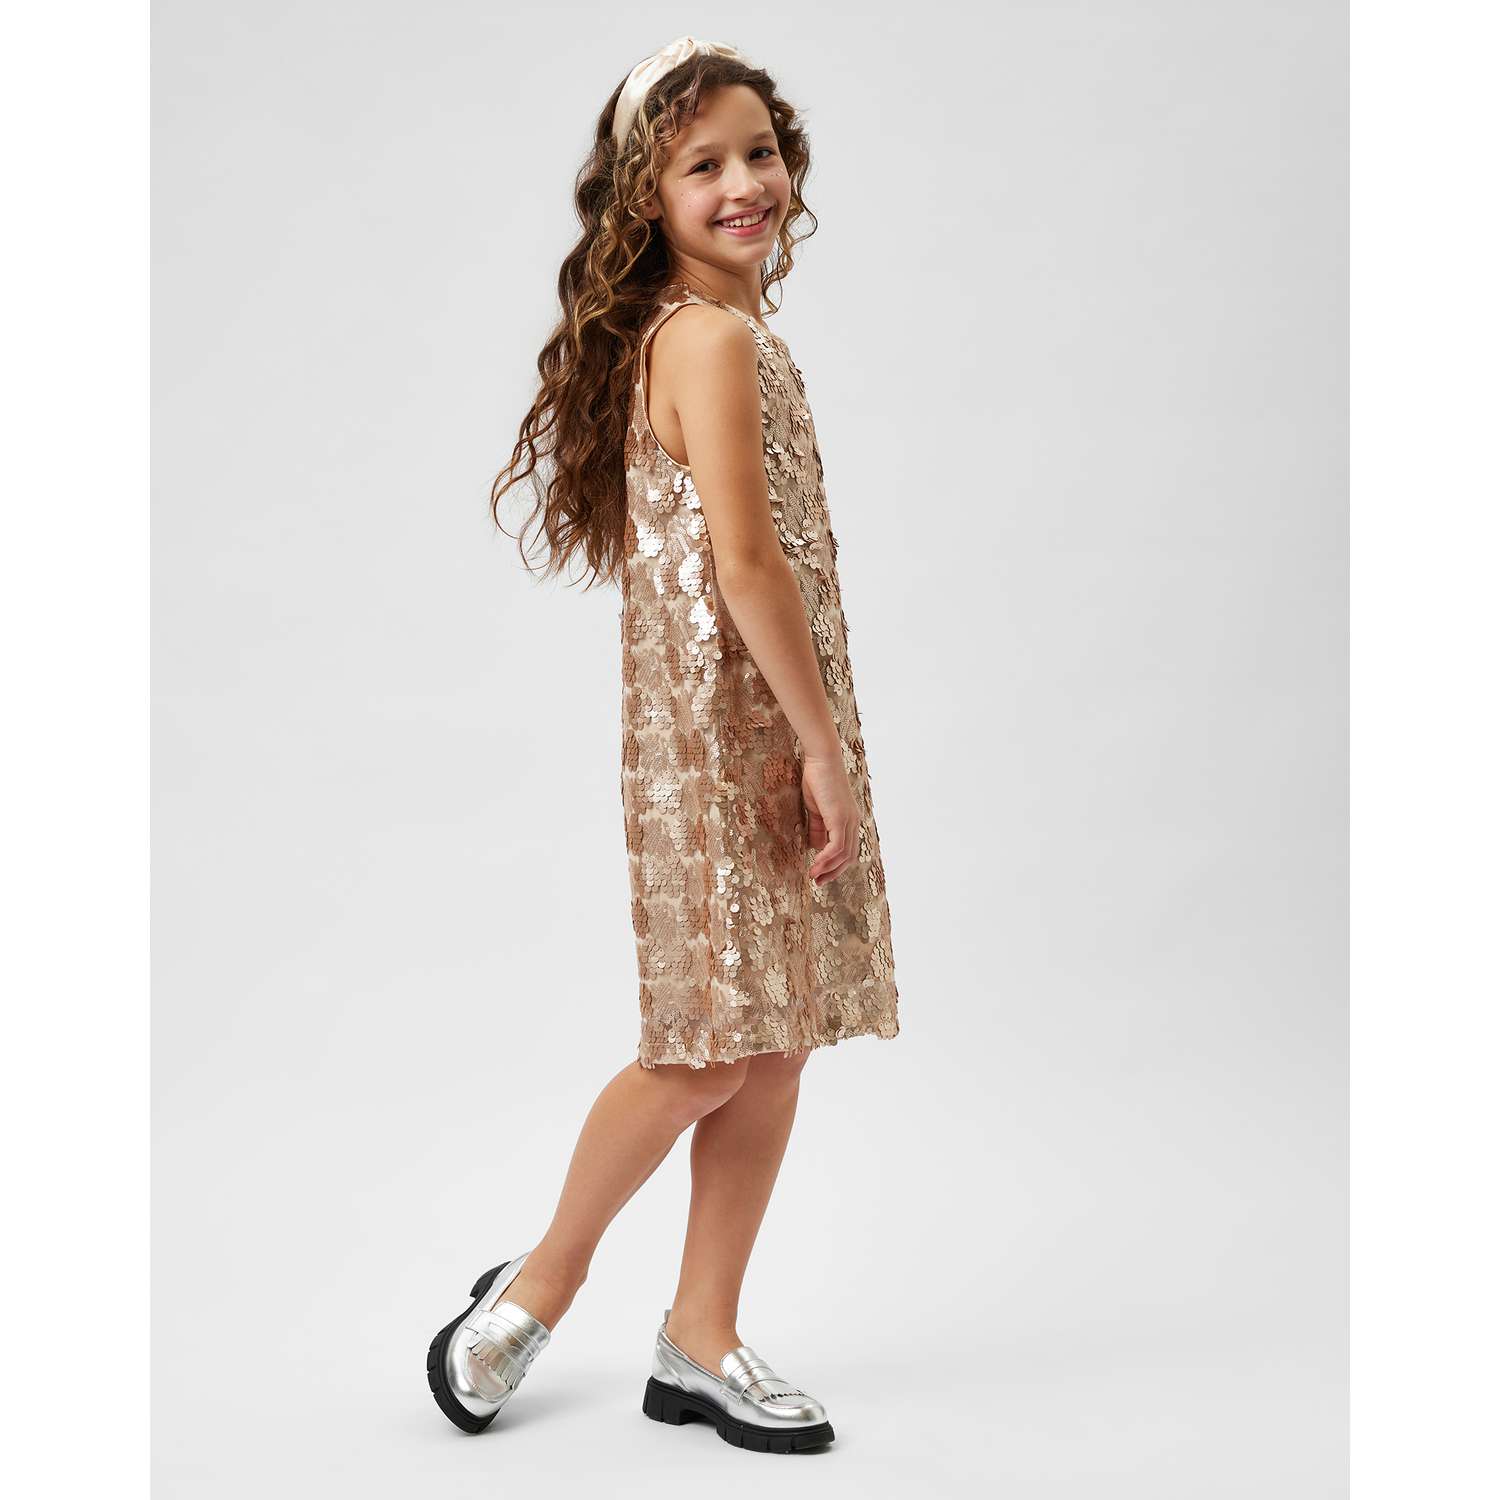 Детские платья с пайетками оптом и в розницу по низким ценам в интернет-магазине Happywear